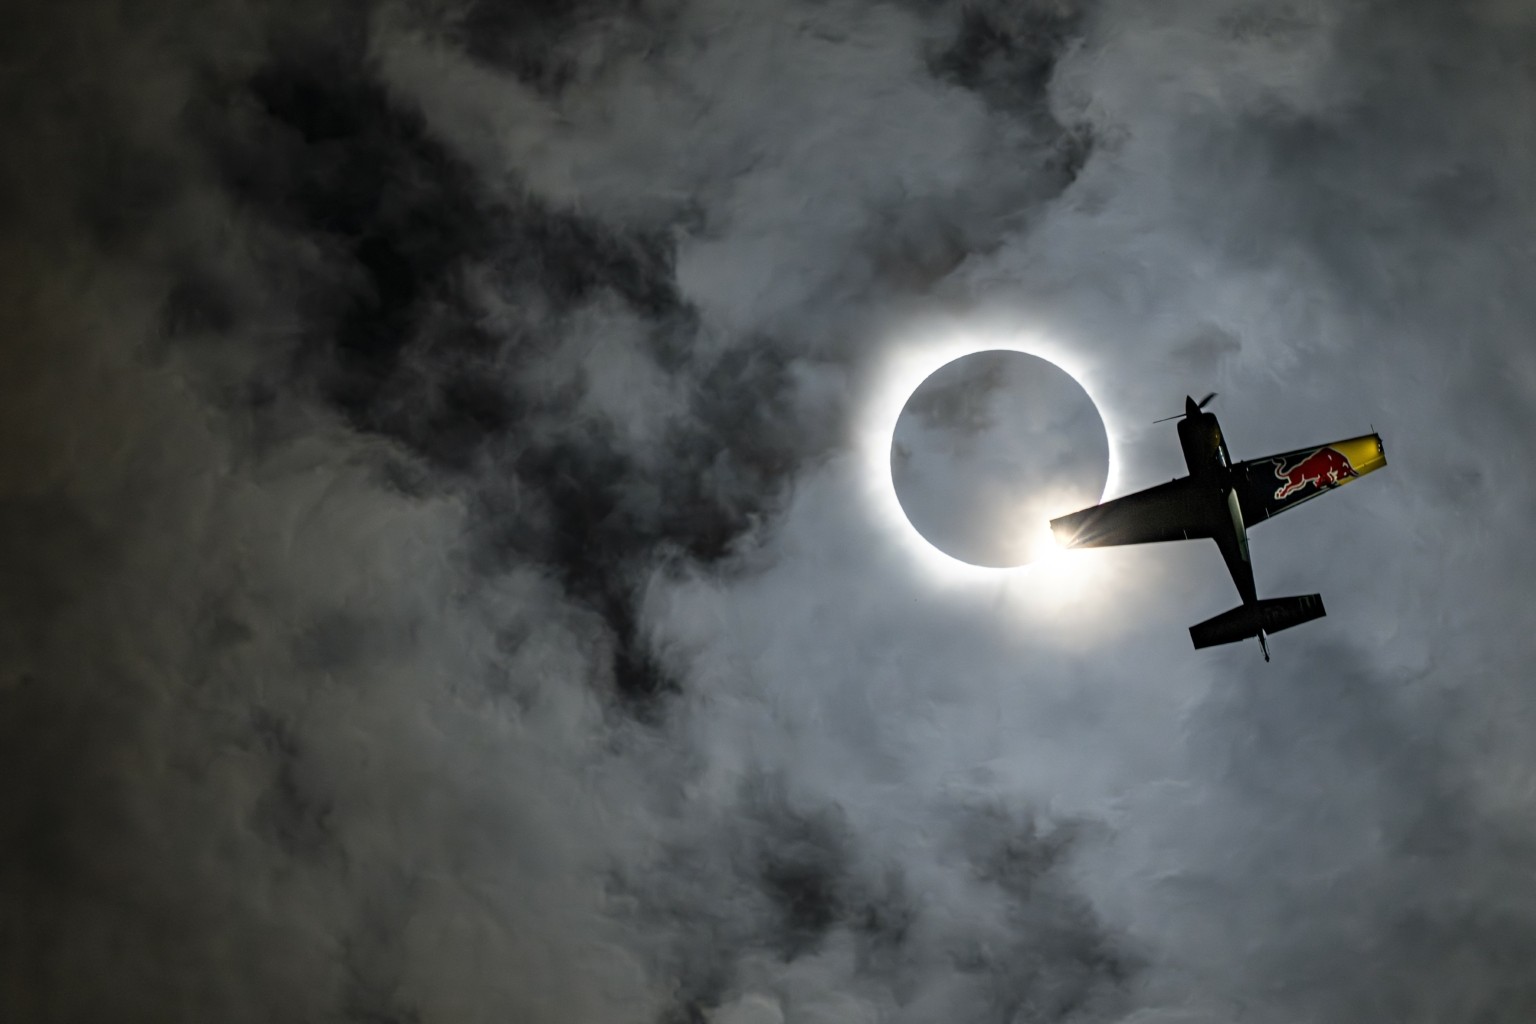 Πιλότοι «χορεύουν» στη σκιά της μεγαλύτερης έκλειψης ηλίου που έγινε ποτέ